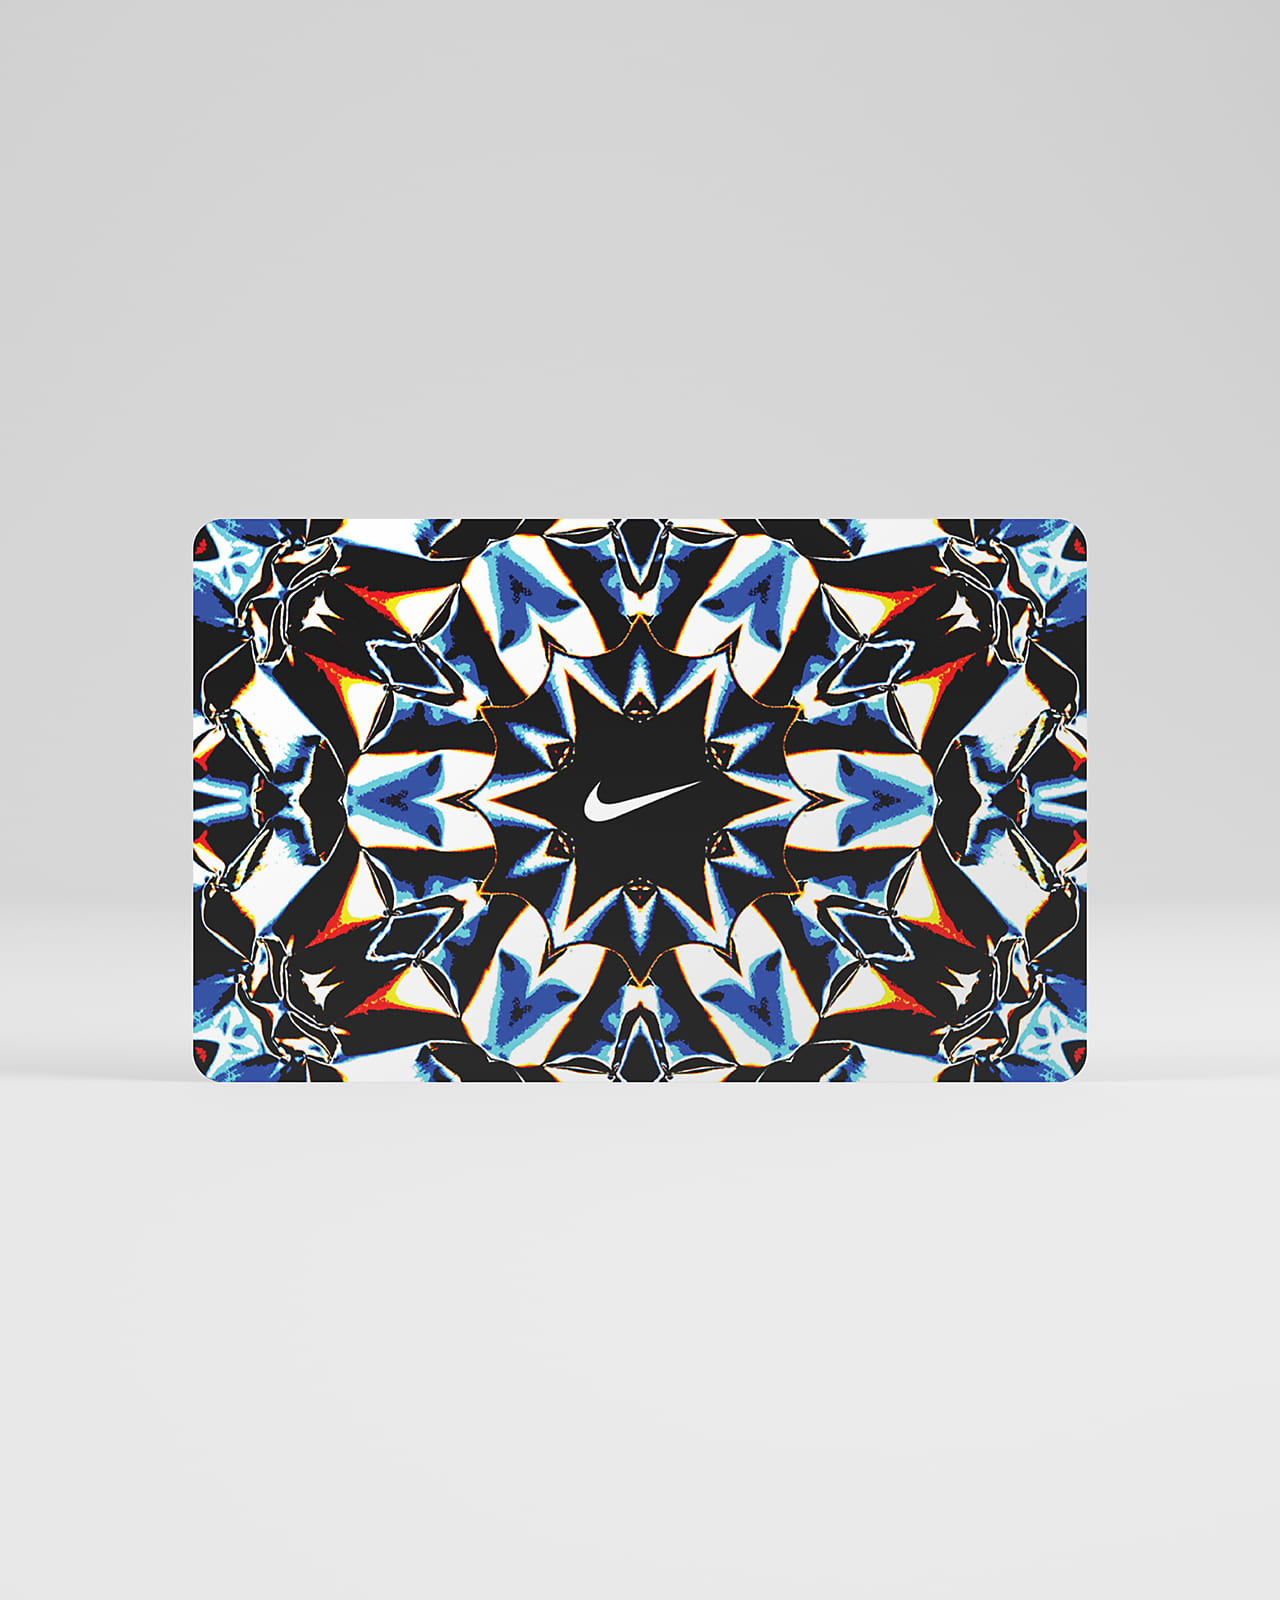 La tarjeta de regalo digital Nike llega por correo electrónico en aproximadamente dos horas o menos